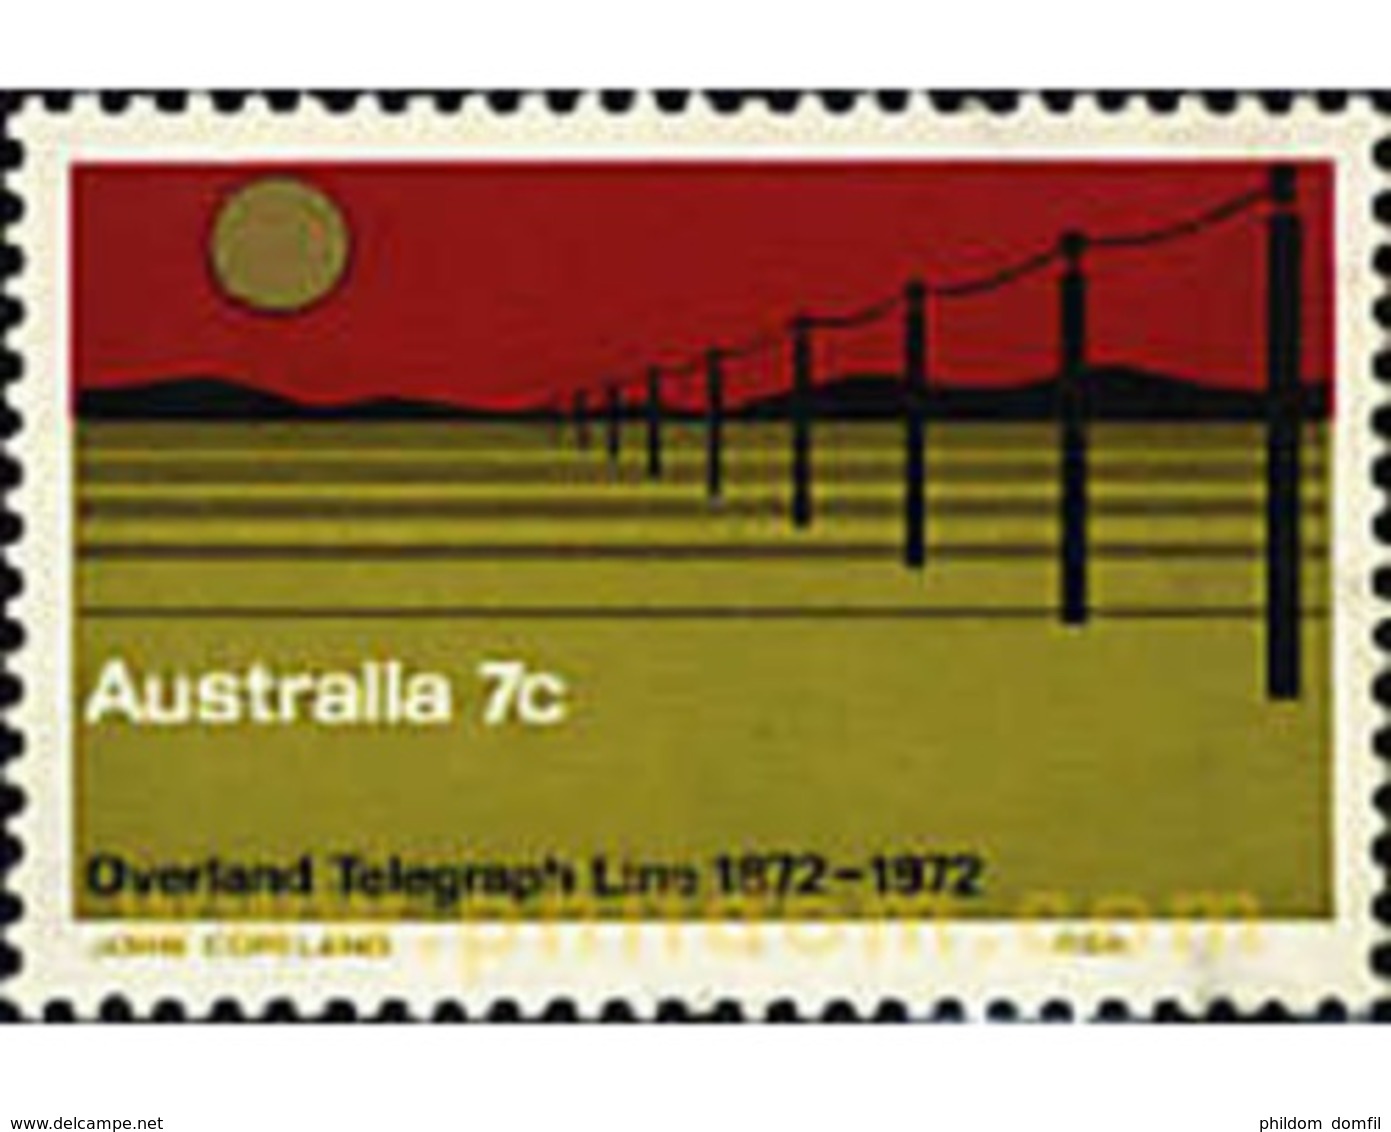 Ref. 52456 * MNH * - AUSTRALIA. 1972. CENTENARIO DE LAS COMUNICACIONES POR TELEGRAFO - Nuevos